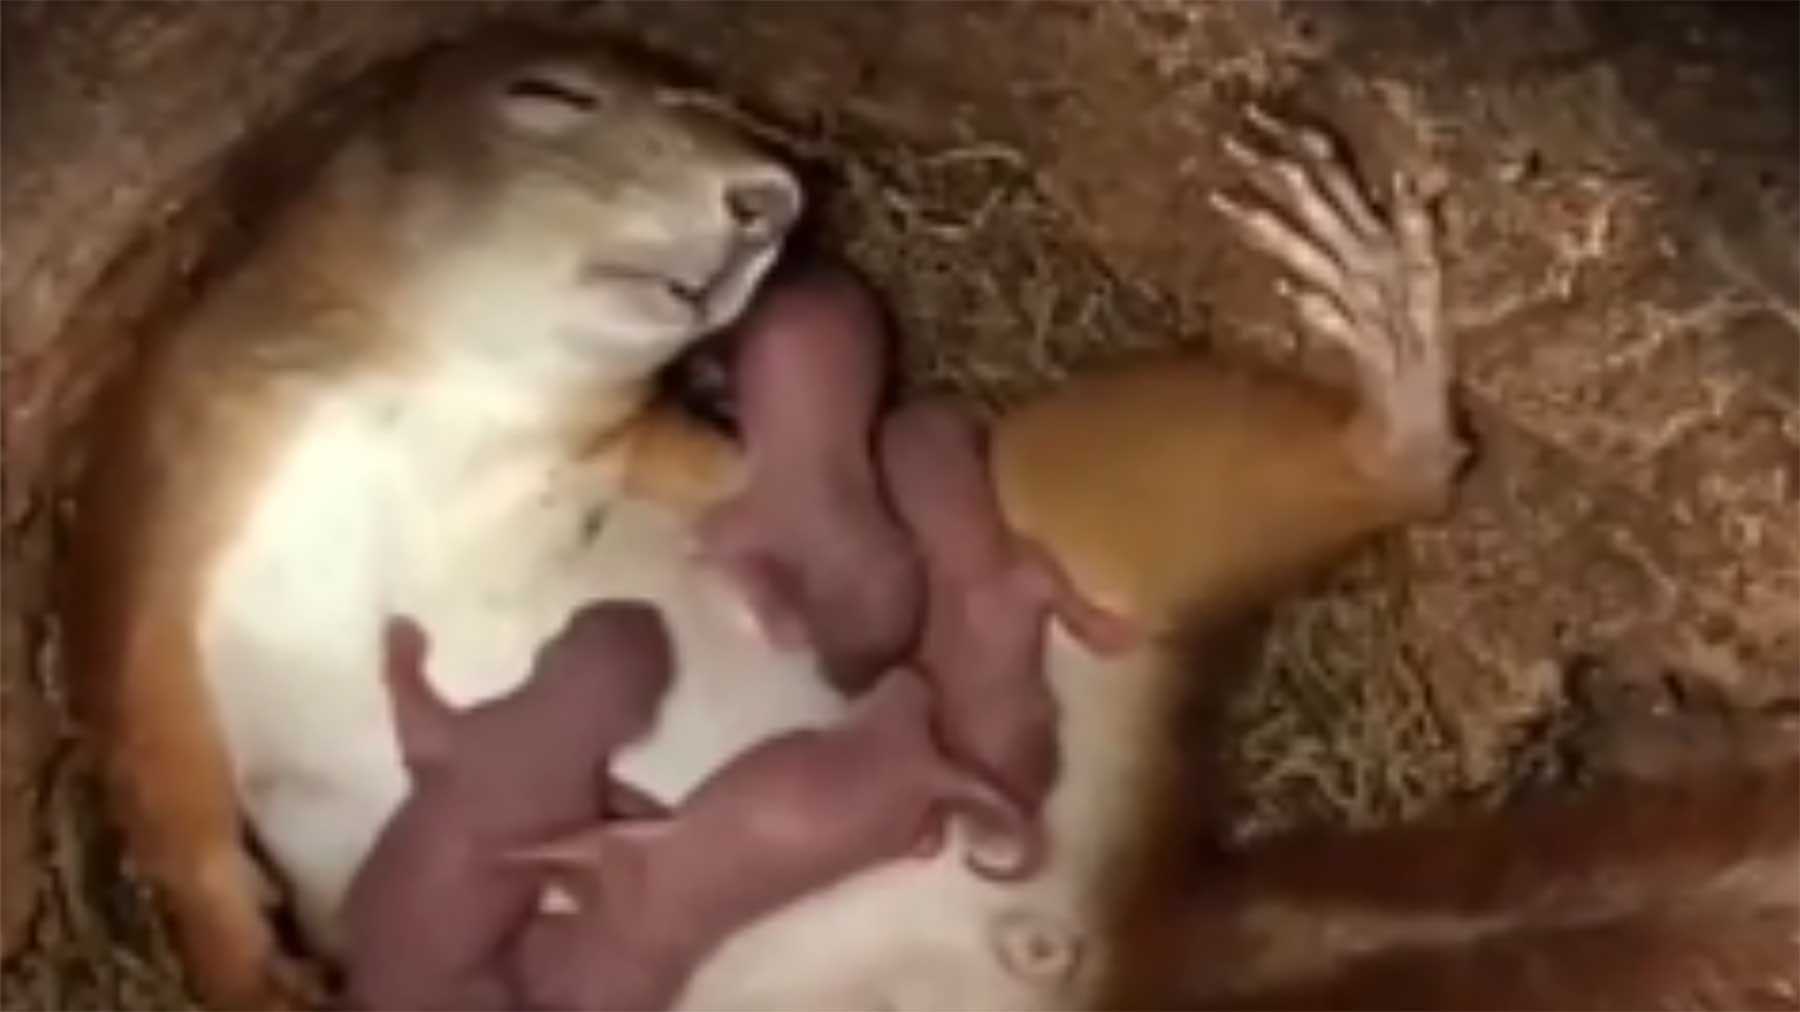 Aufnahmen aus dem Inneren eines Eichhörnchen-Nestes eichhoernchen-nest 